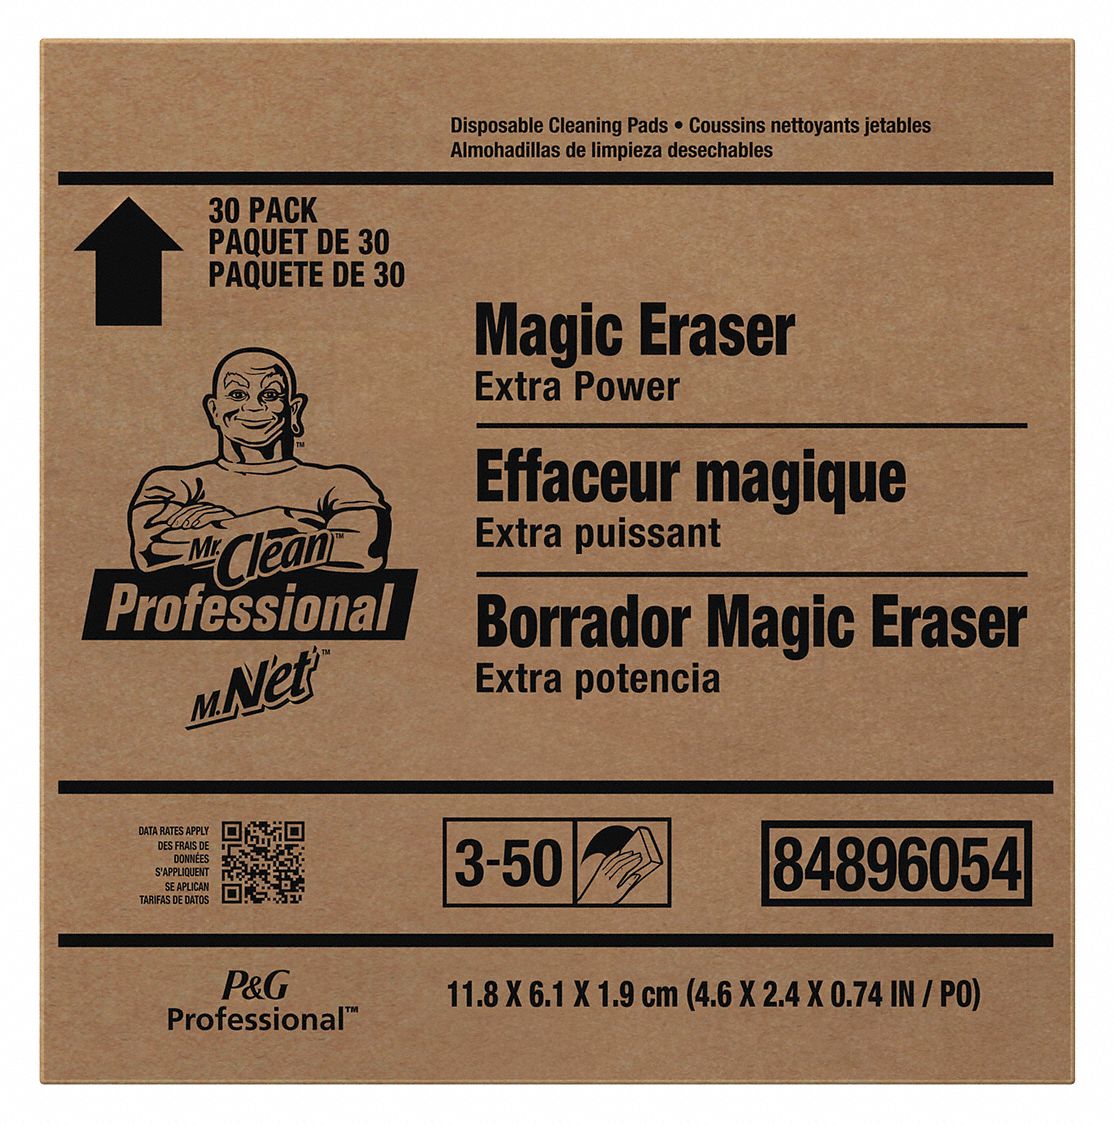 Với bông tẩy rửa MR.CLEAN MAGIC ERASER 30CT, bạn sẽ không còn phải lo lắng về bụi bẩn khó chịu trên các bề mặt nhà cửa. Sản phẩm này có khả năng làm sạch hiệu quả và dễ dàng sử dụng. Hãy xem hình ảnh để tận mắt chứng kiến sức mạnh của MR.CLEAN MAGIC ERASER.